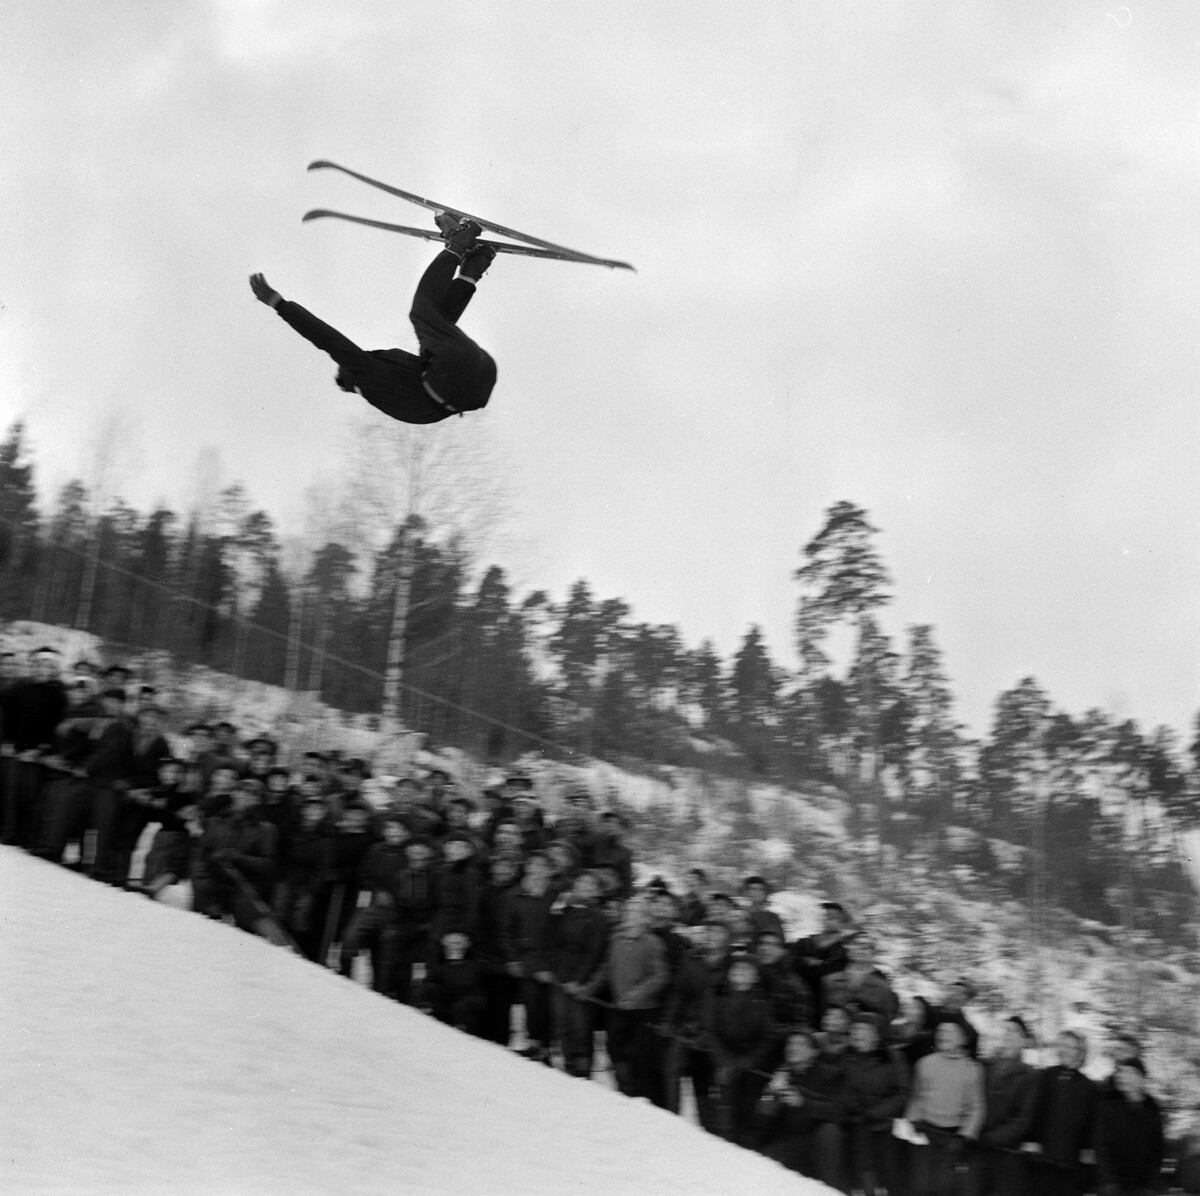 Асбьорн Линге на лыжной трассе, Швеция, 1956. Фотограф Рольф Олсон